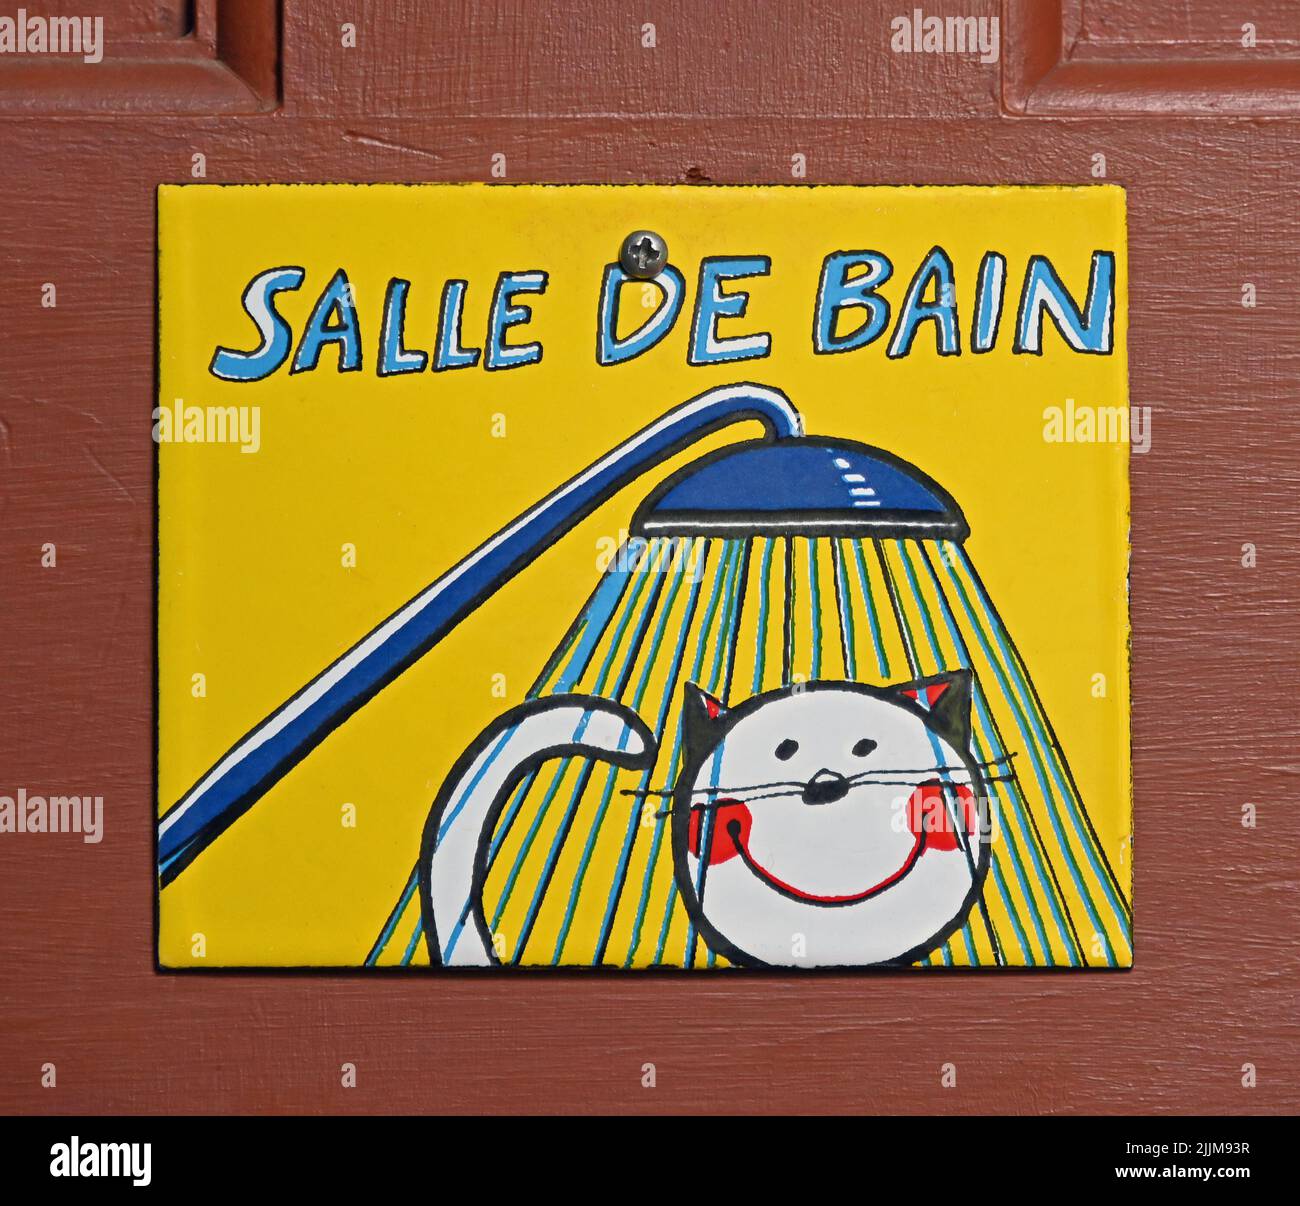 'SALLE DE BAIN'. Cartel de metal esmaltado en la puerta del baño. Foto de stock